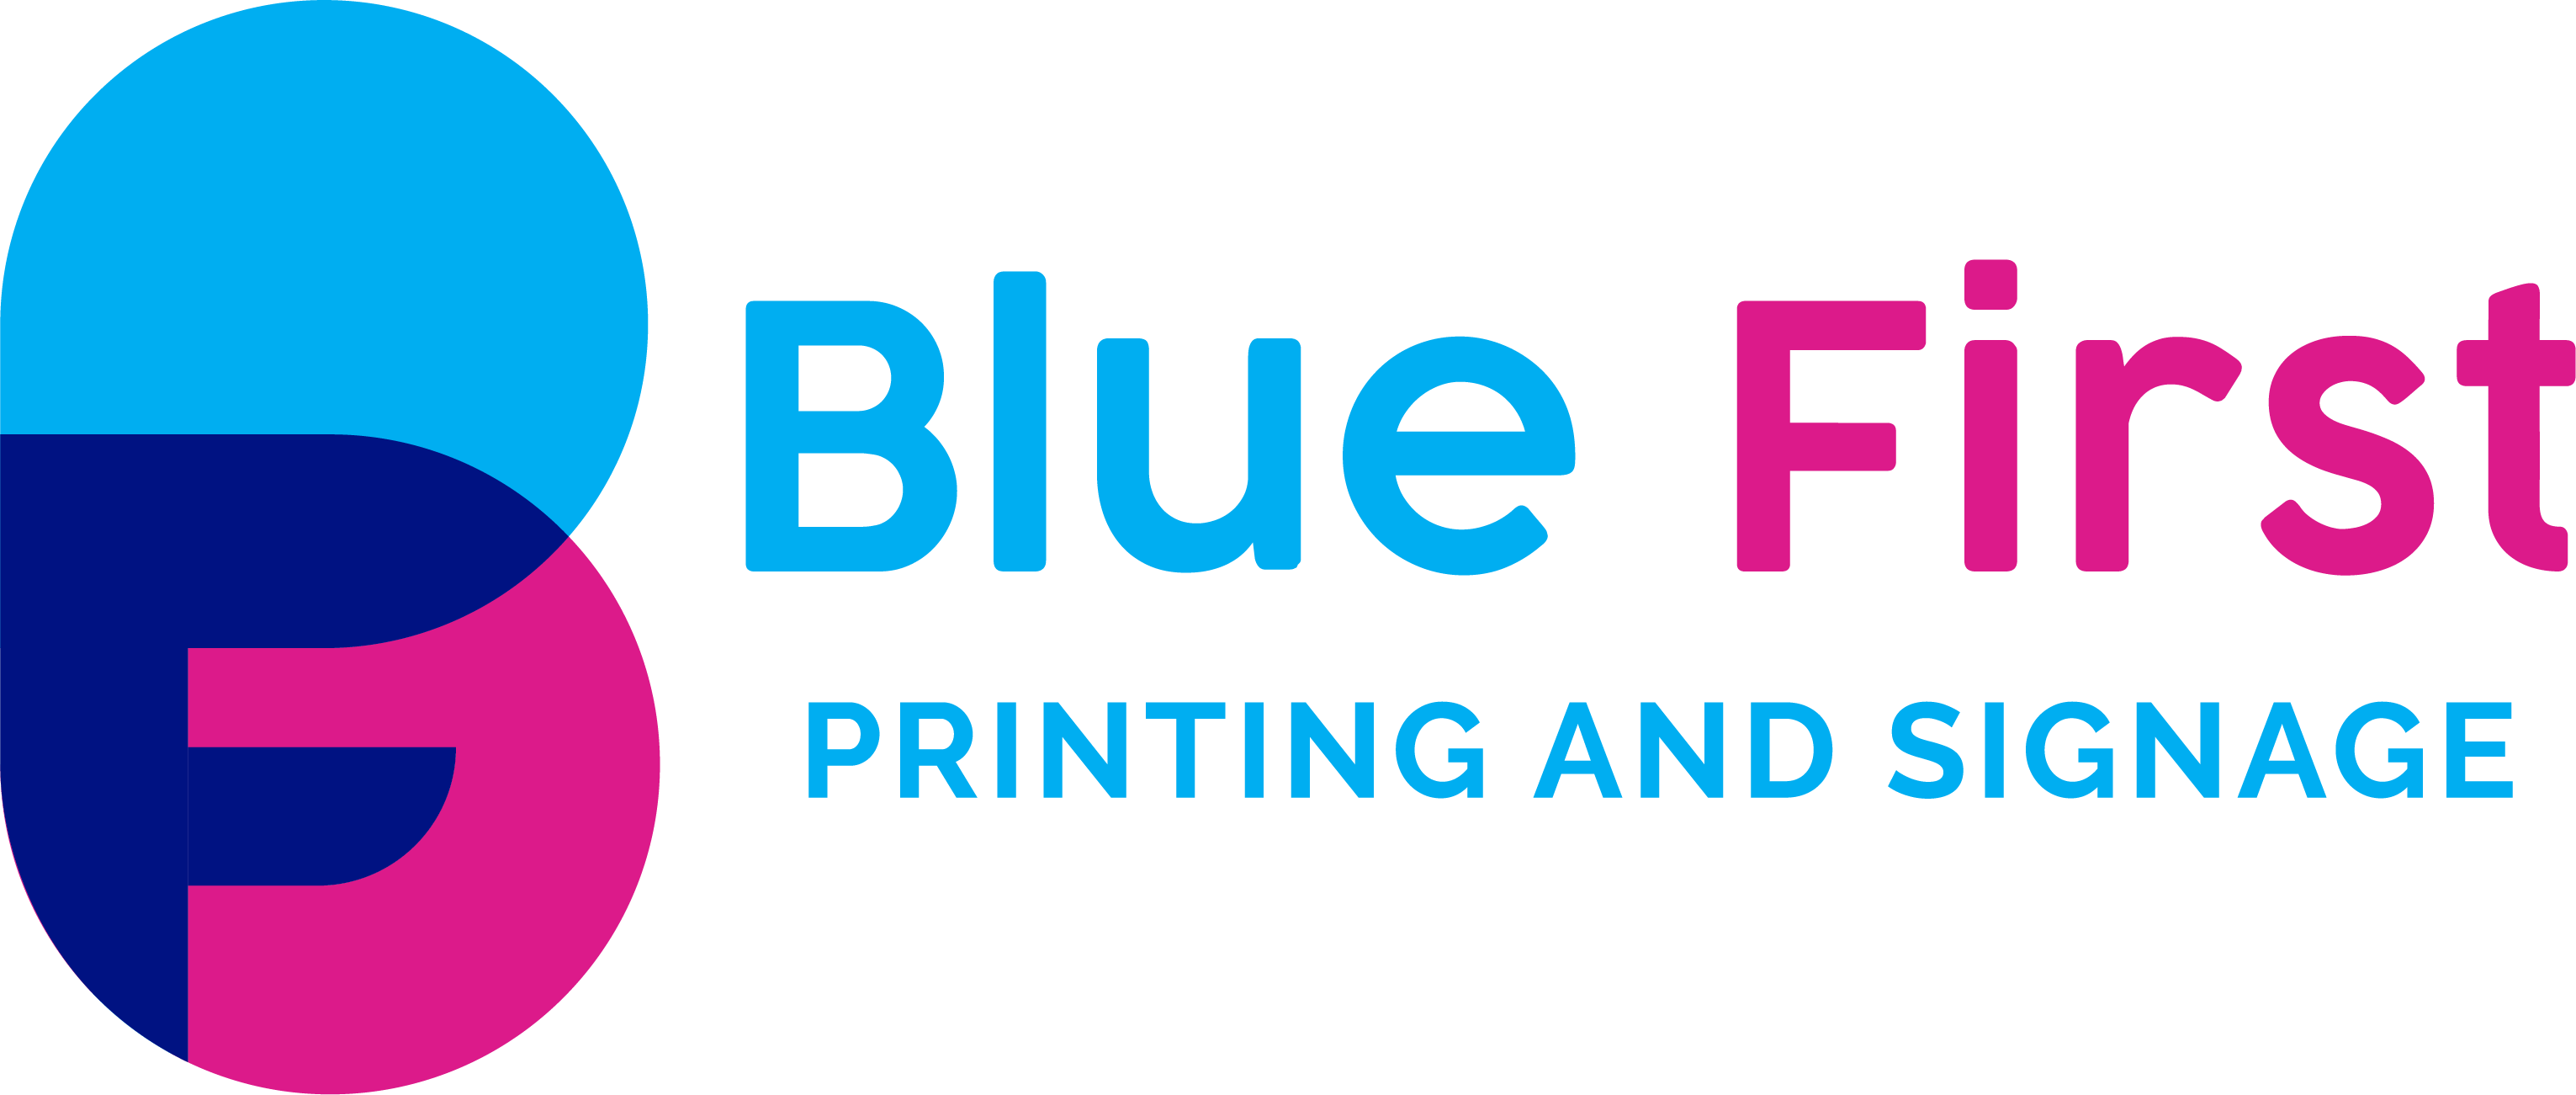 Blue First logo